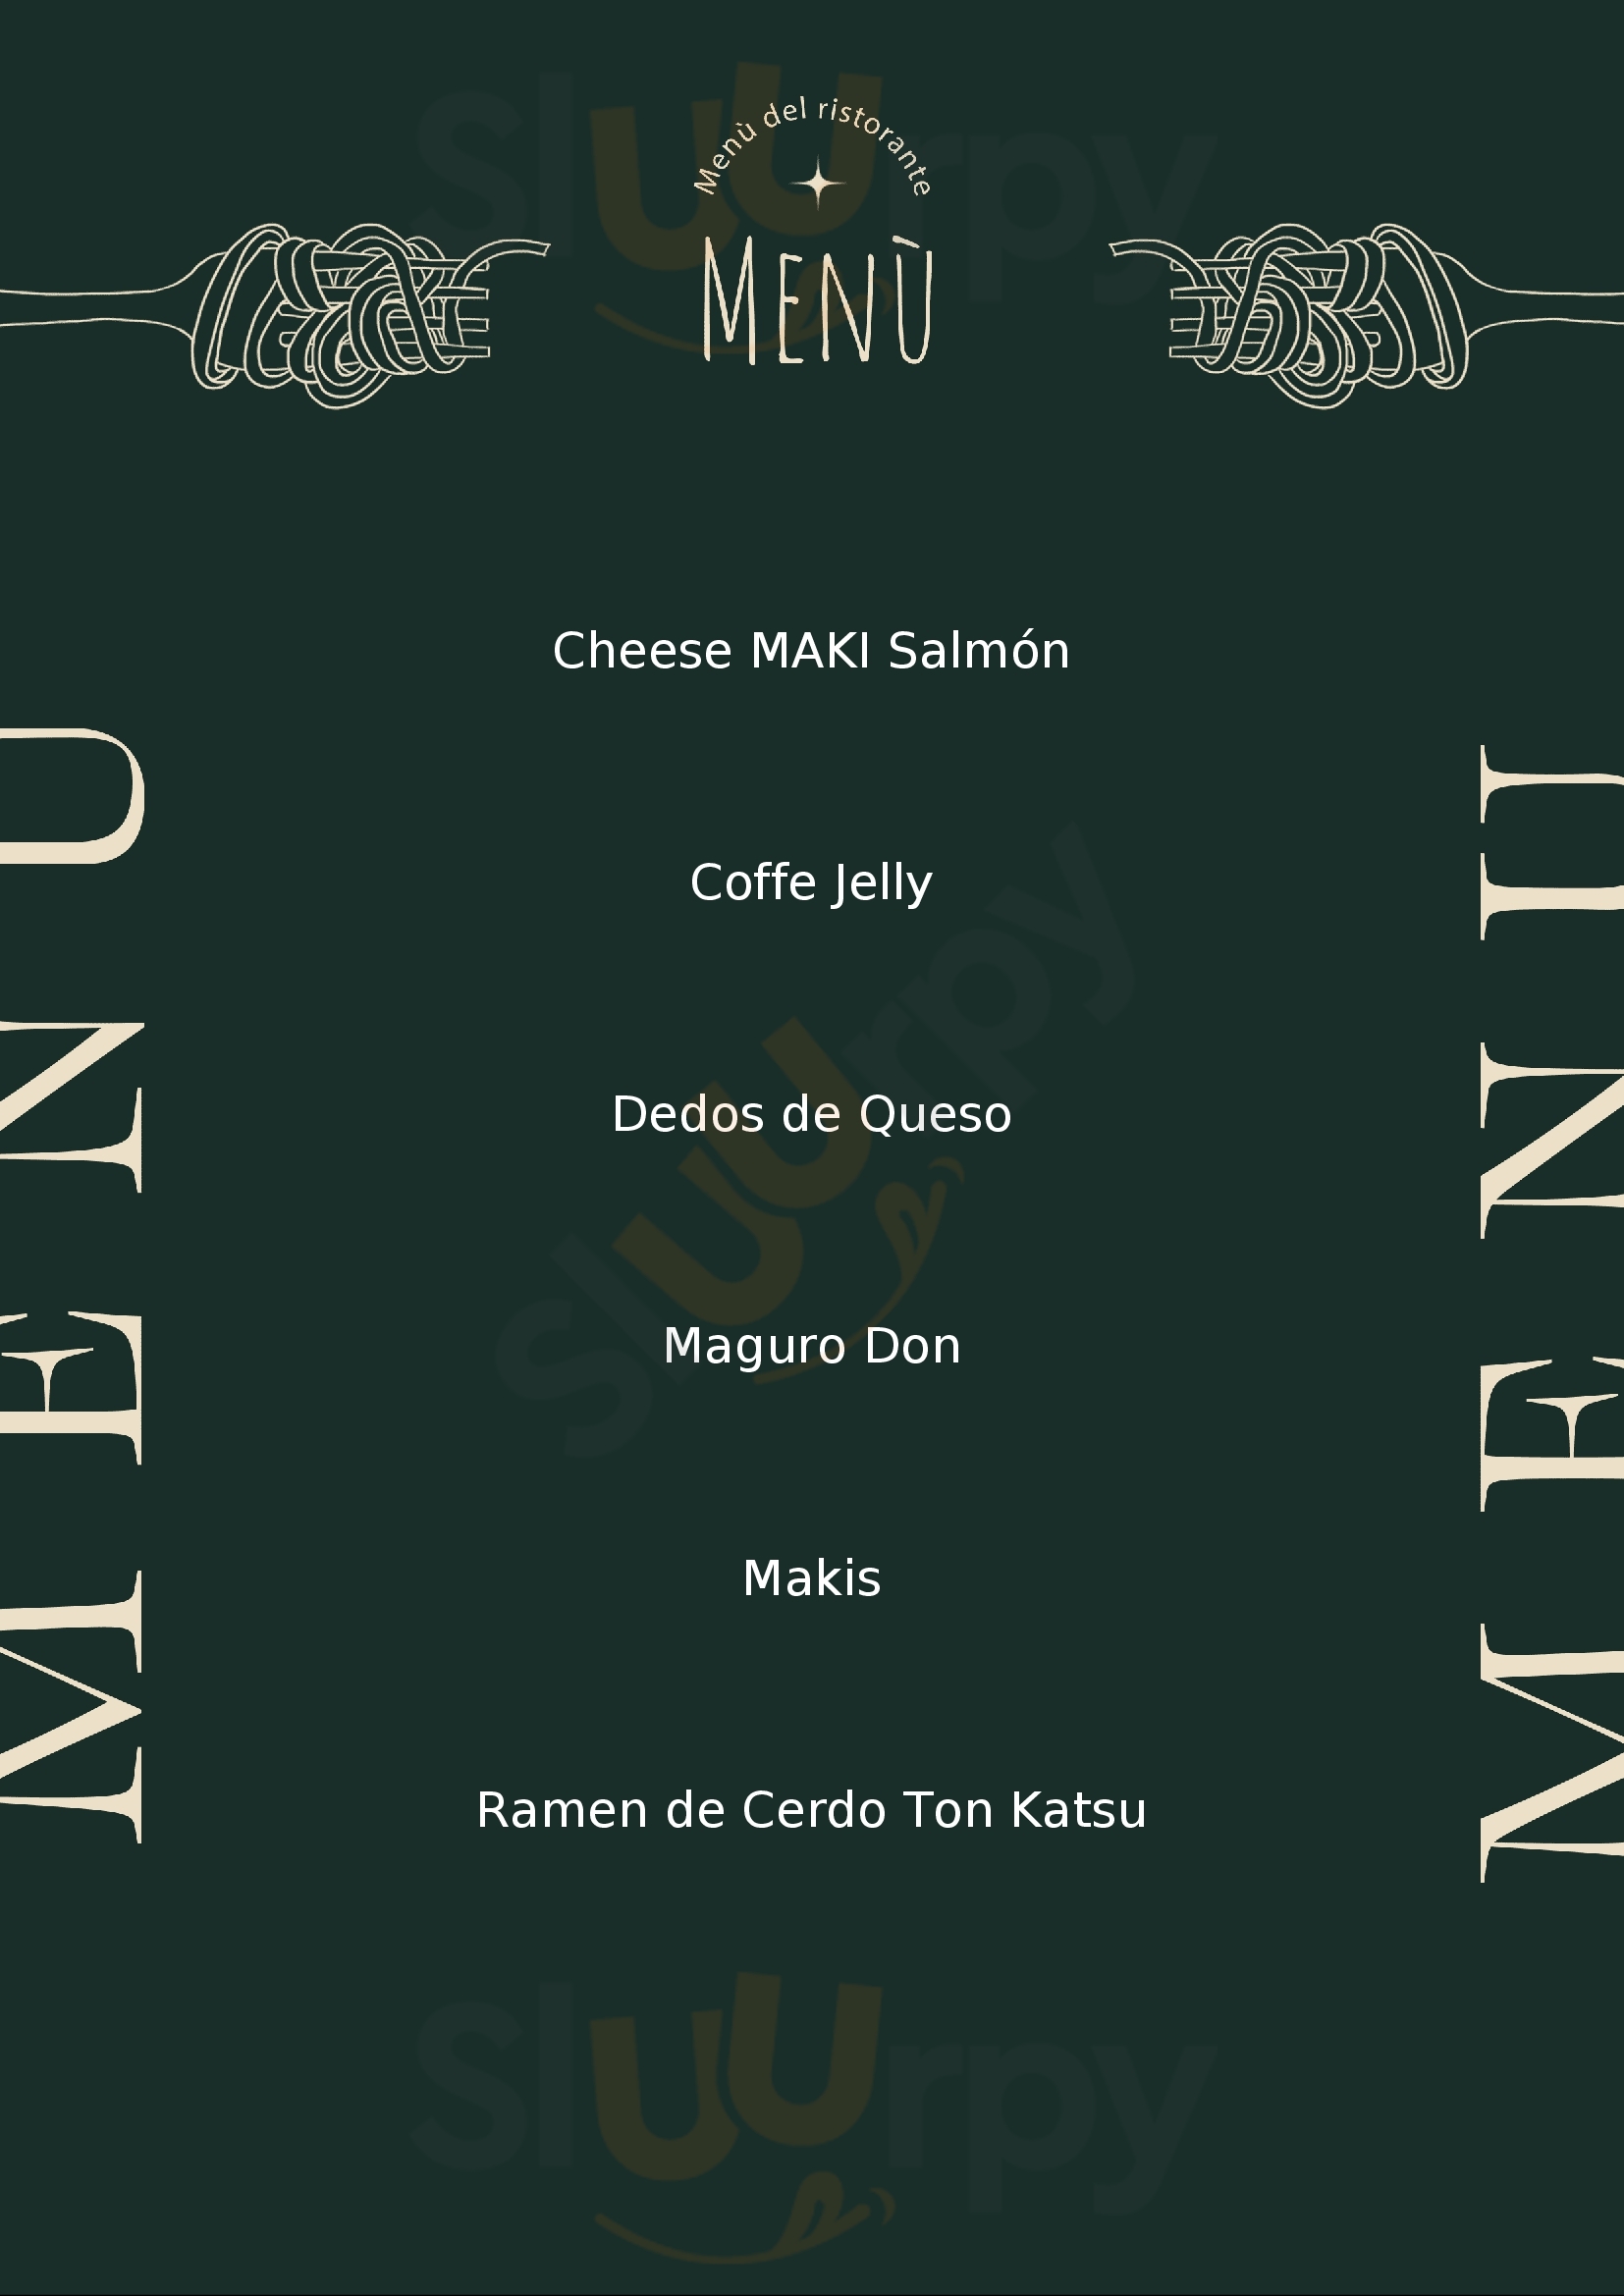 Eiki Restaurante León Menu - 1